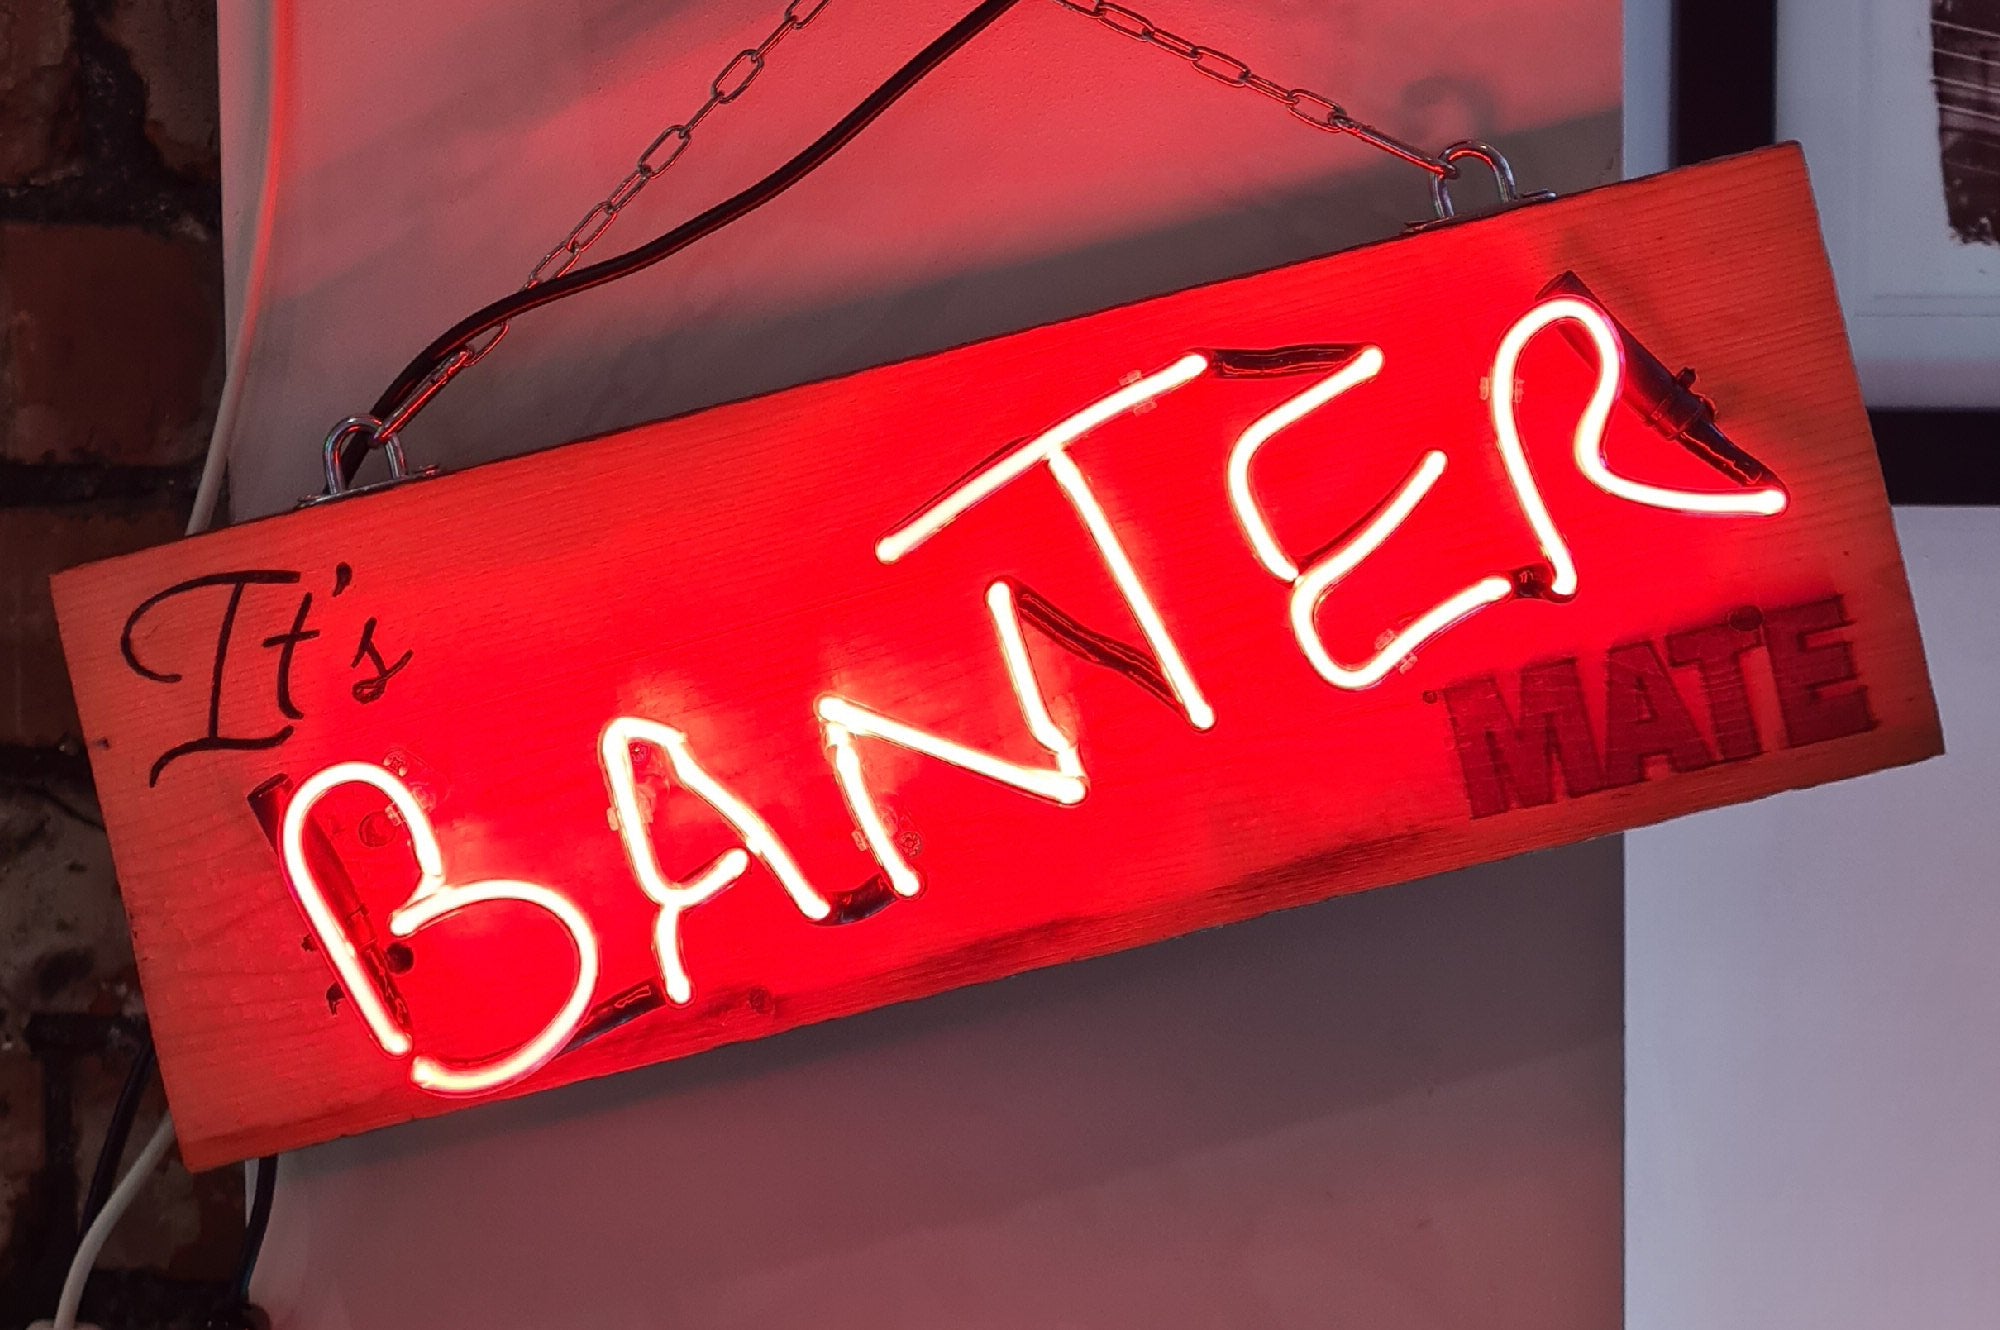 BANTER Neon Sign